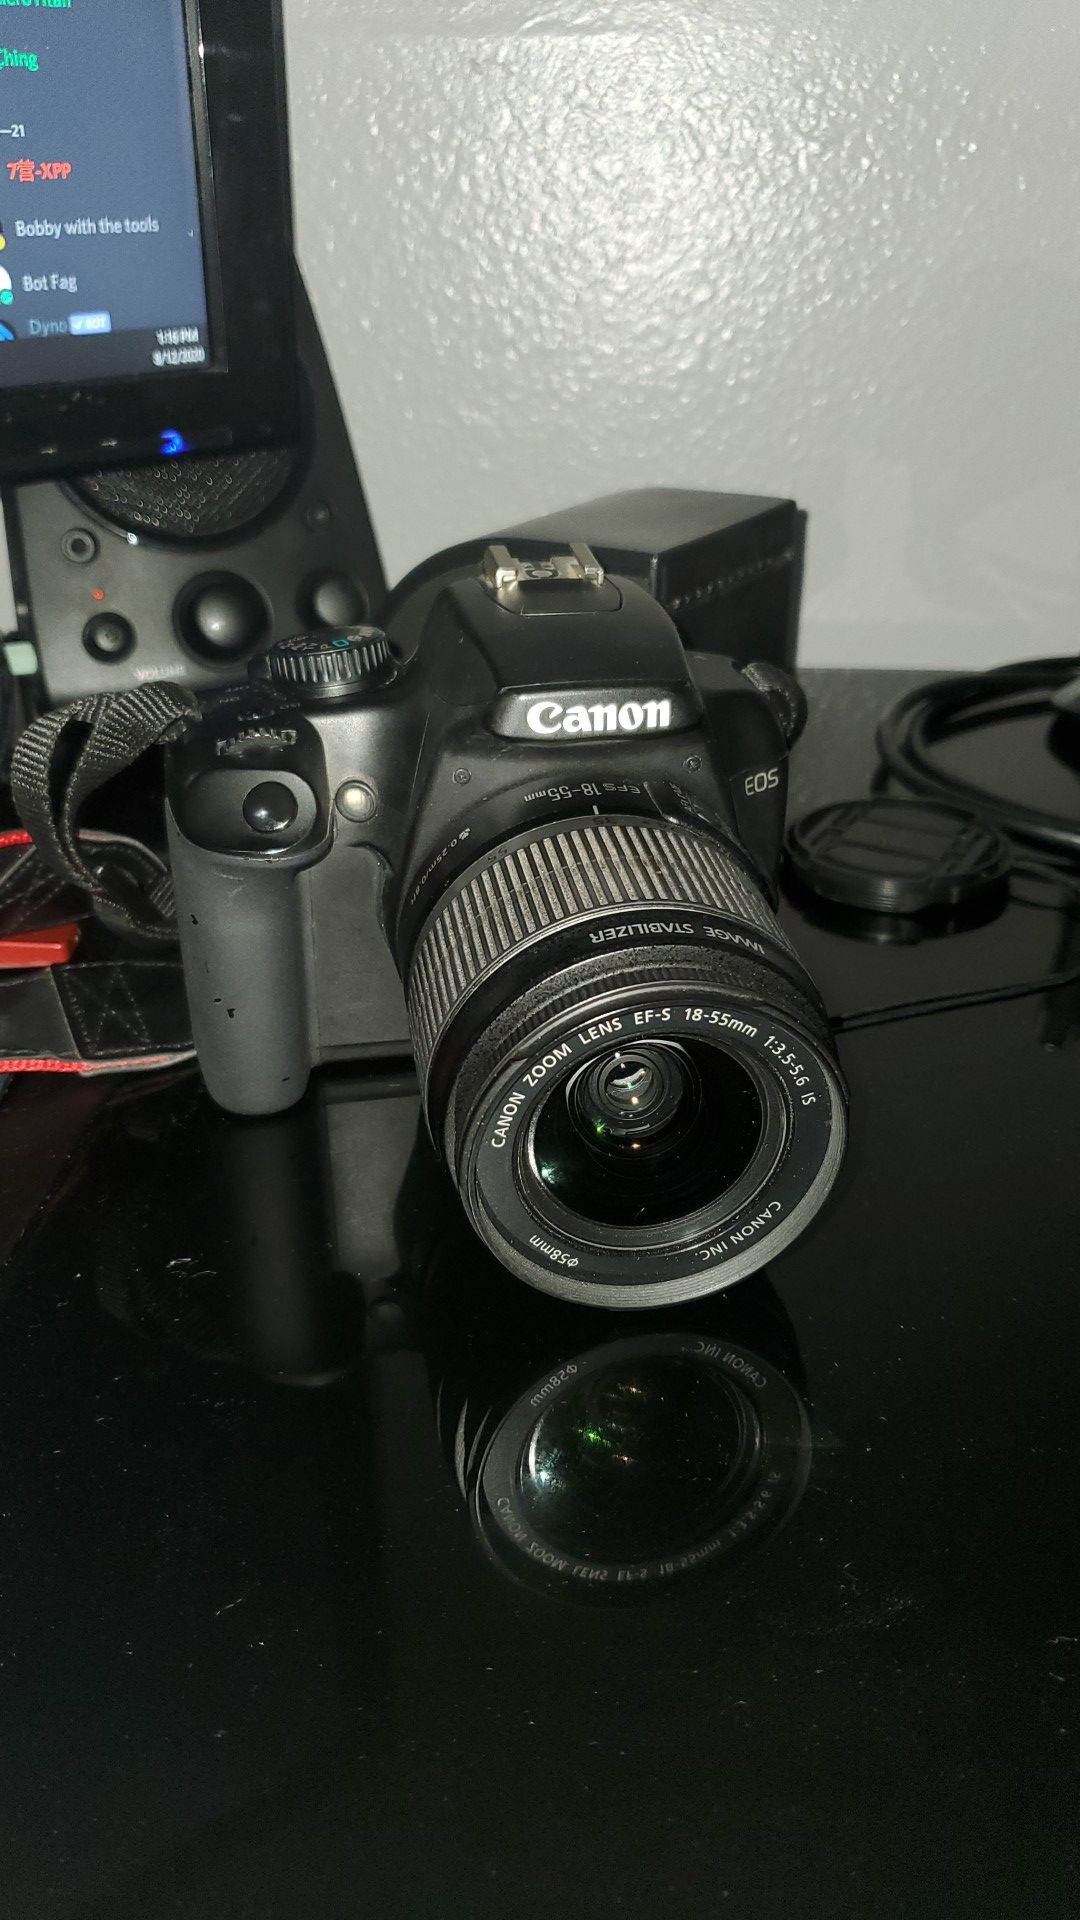 Canon EOS Rebel XS DSLR